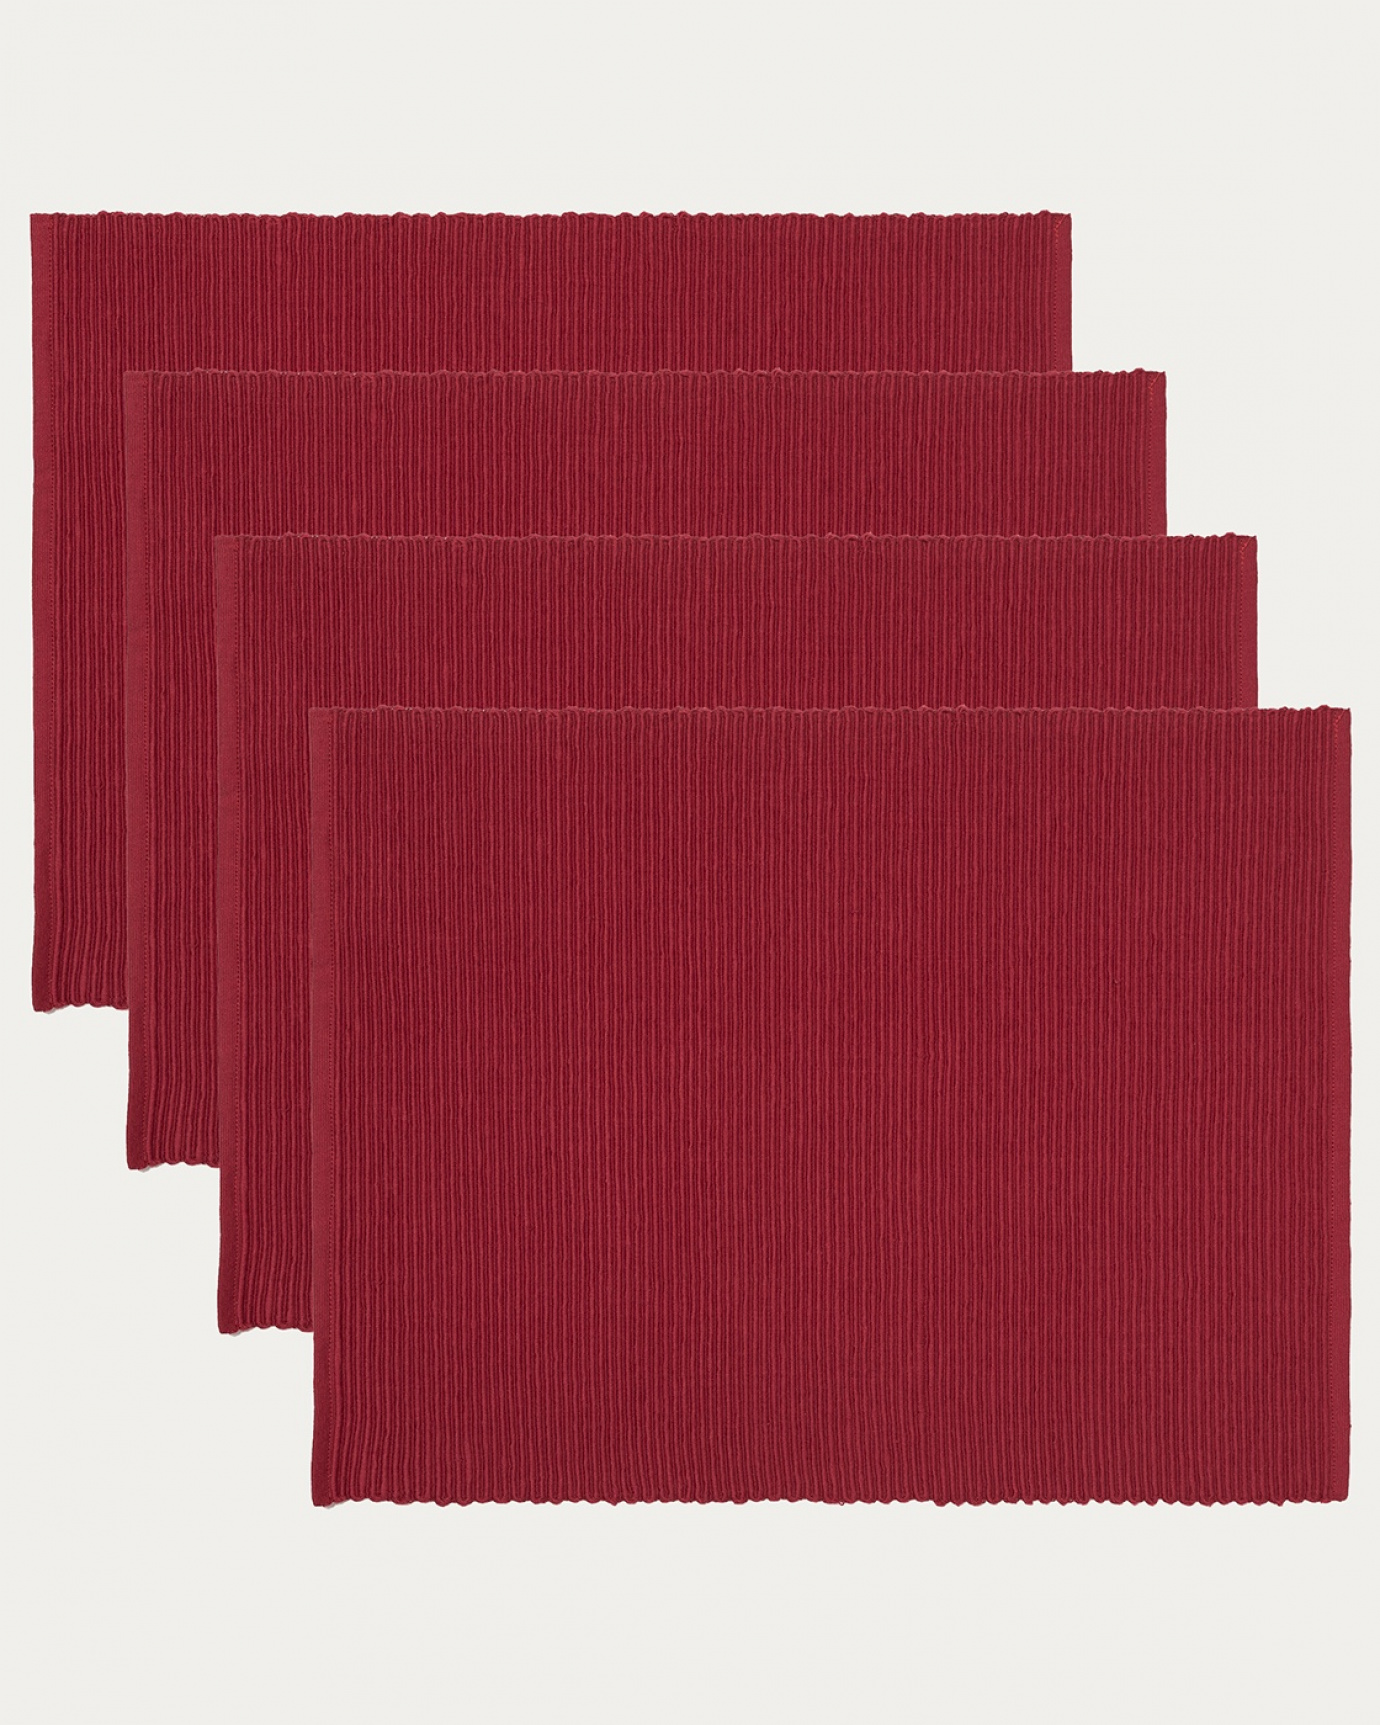 Produktbild rot UNI Tischset aus weicher Baumwolle in Rippenqualität von LINUM DESIGN. Größe 35x46 cm und in 4er-Pack verkauft.